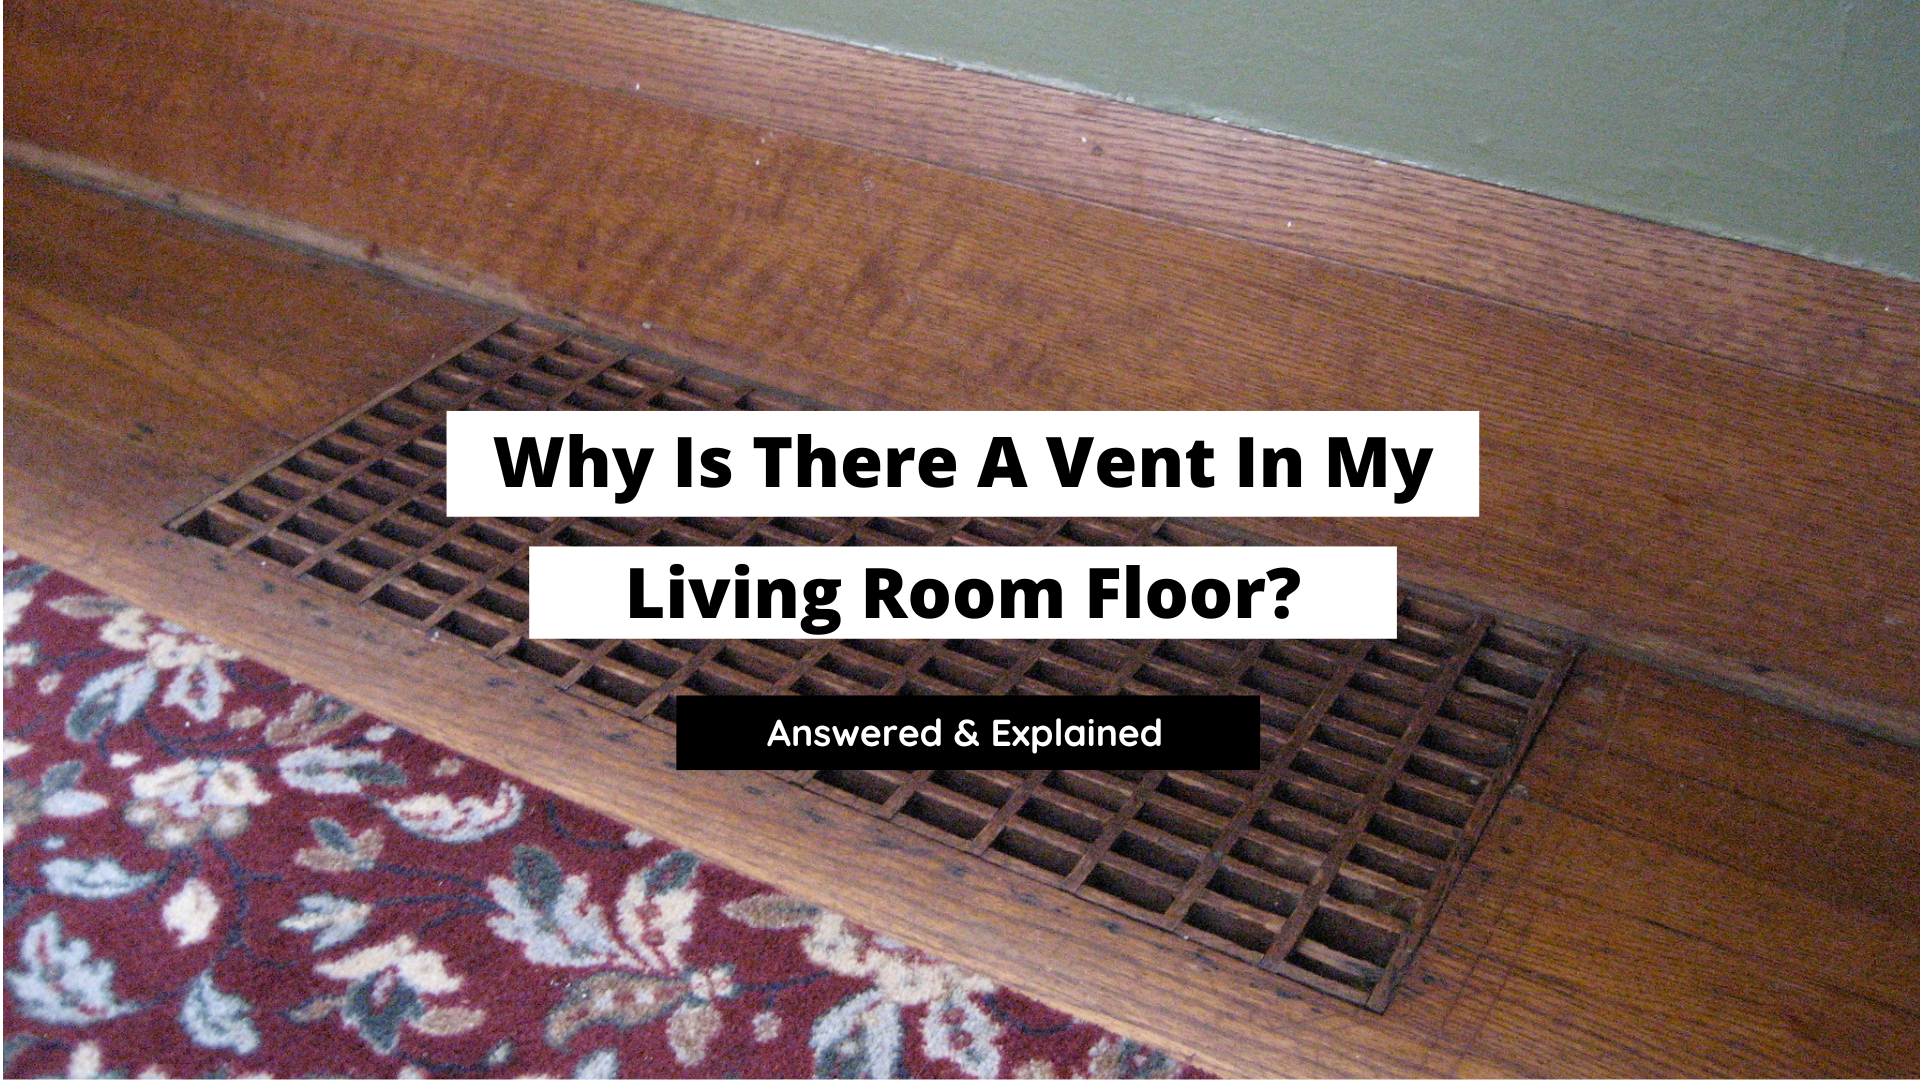 vent in floor, floor vents, reasons for floor vents, floor vent in living room